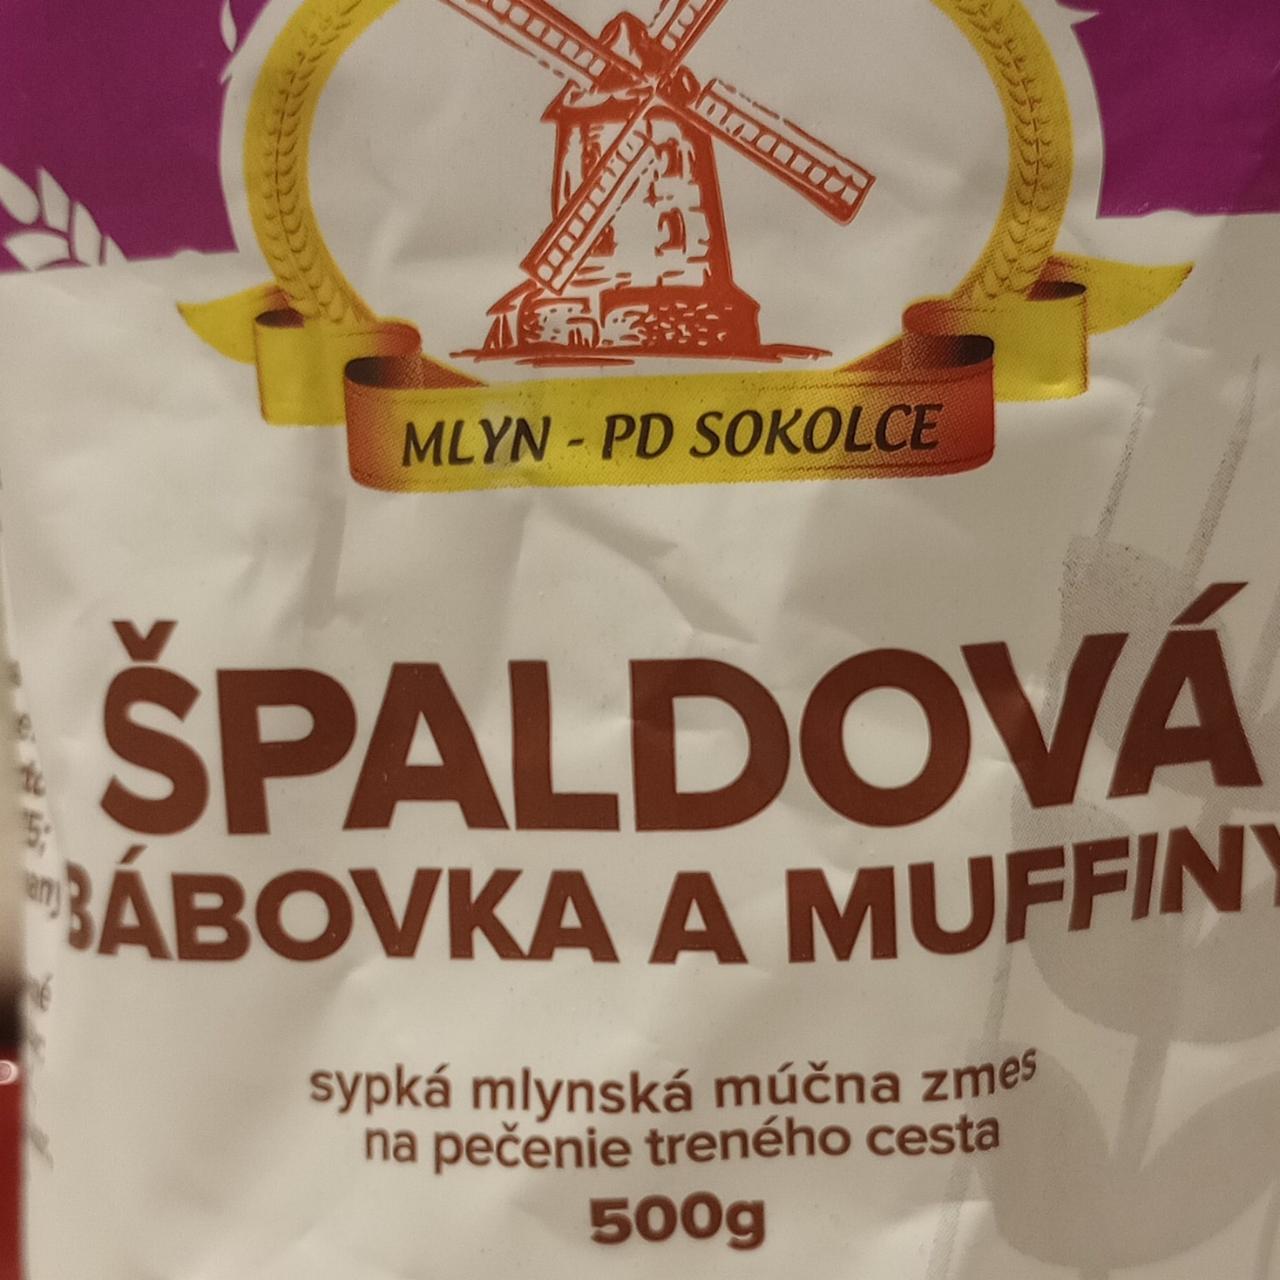 Fotografie - špaldová bábovka a muffiny Mlýn - PD Sokolce